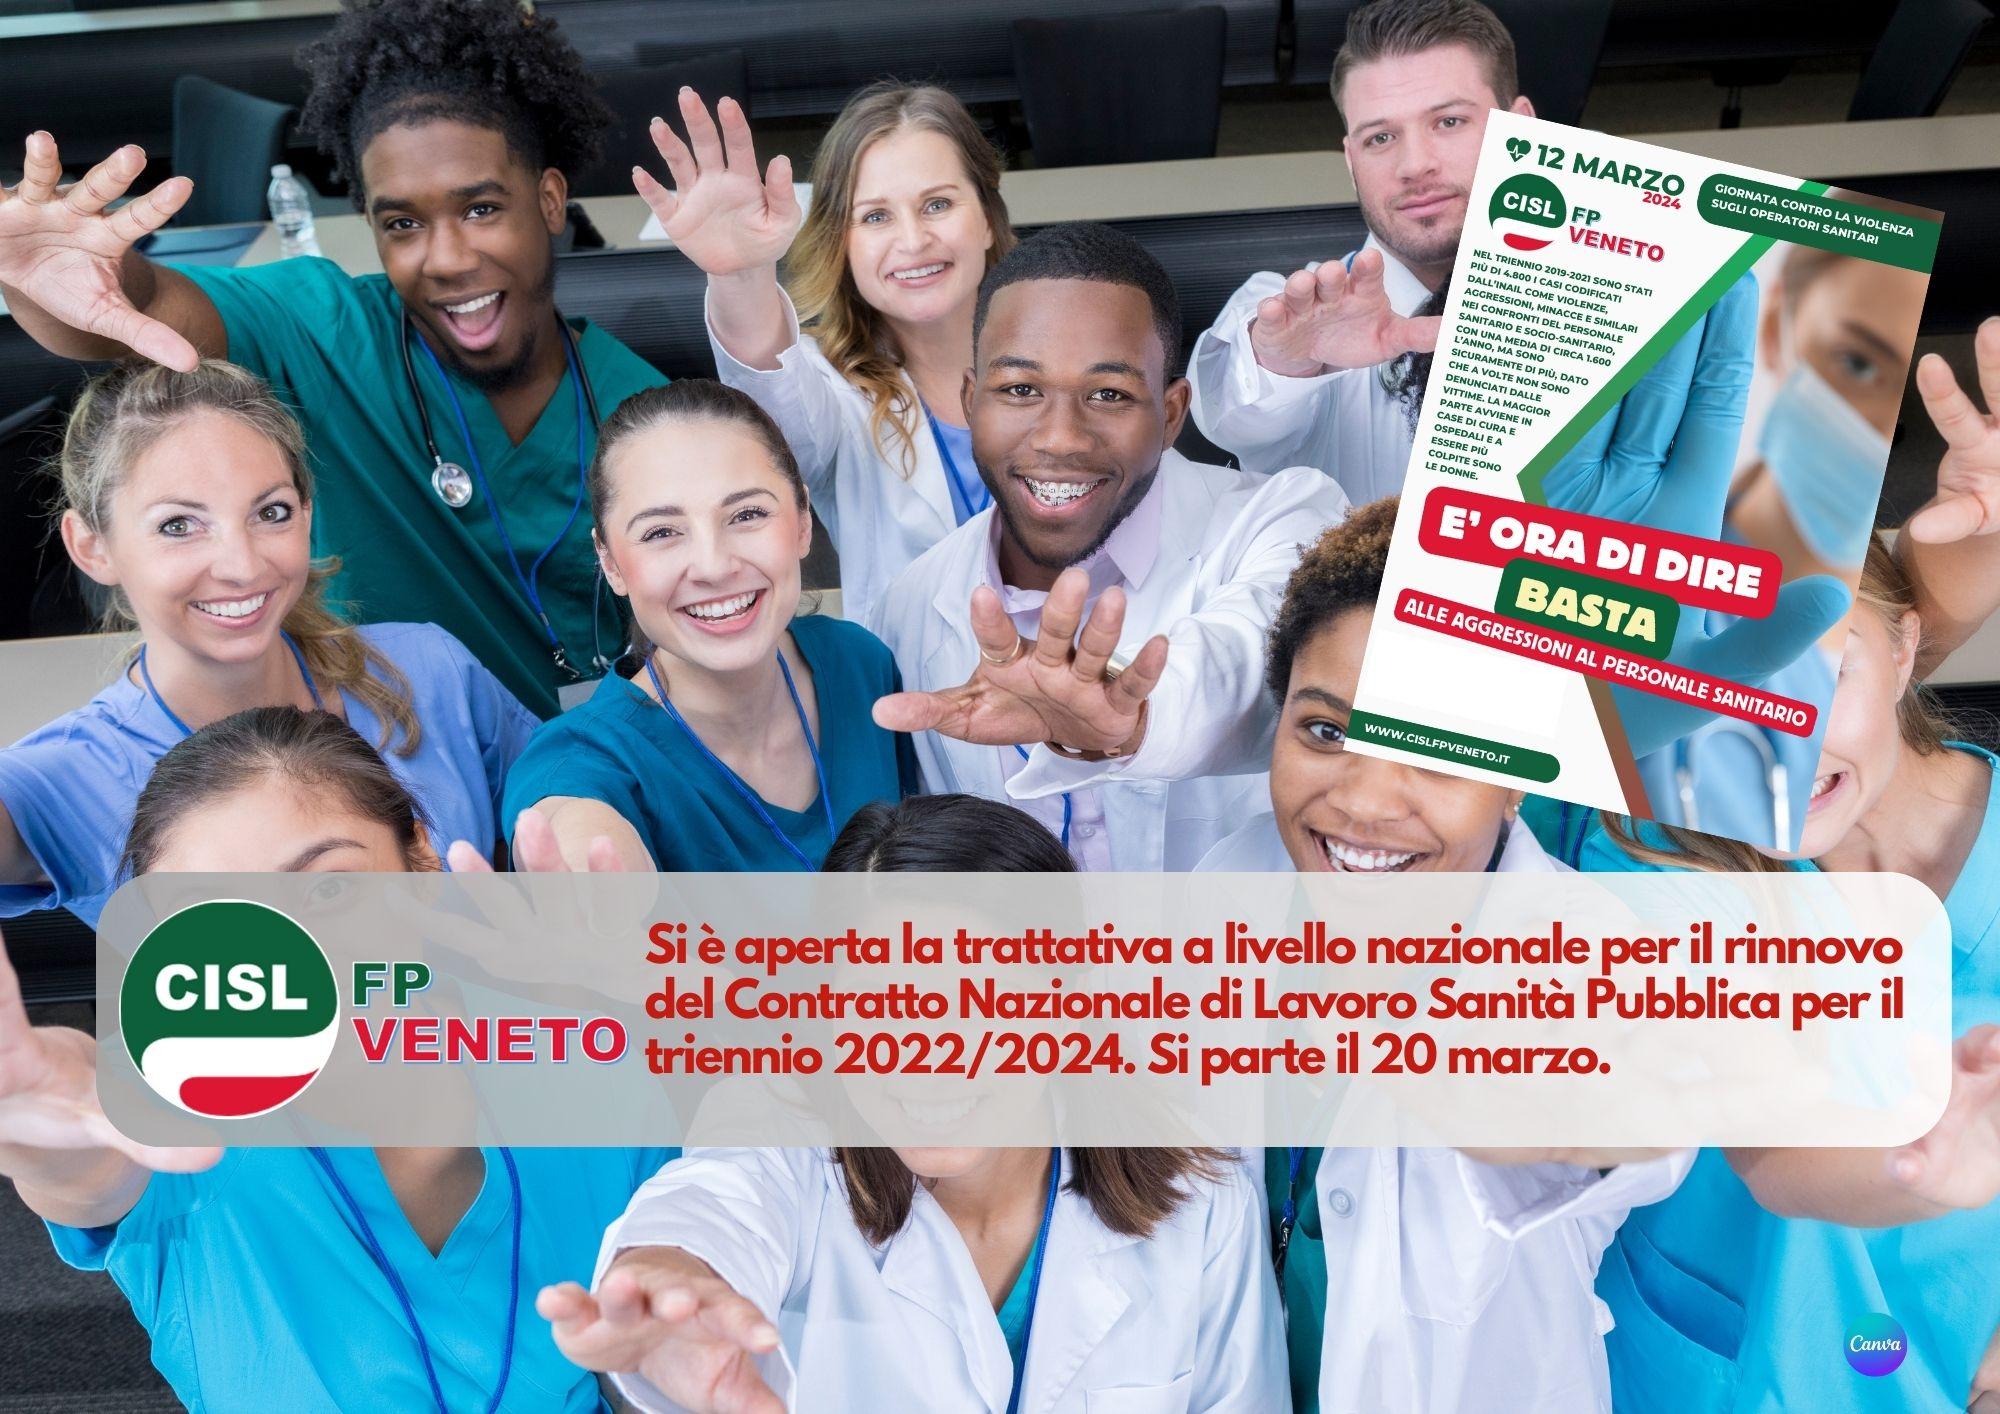 CISL FP Veneto. Contratto Sanità pubblica 2022/2024. Aperta la trattativa: si parte il 20 marzo